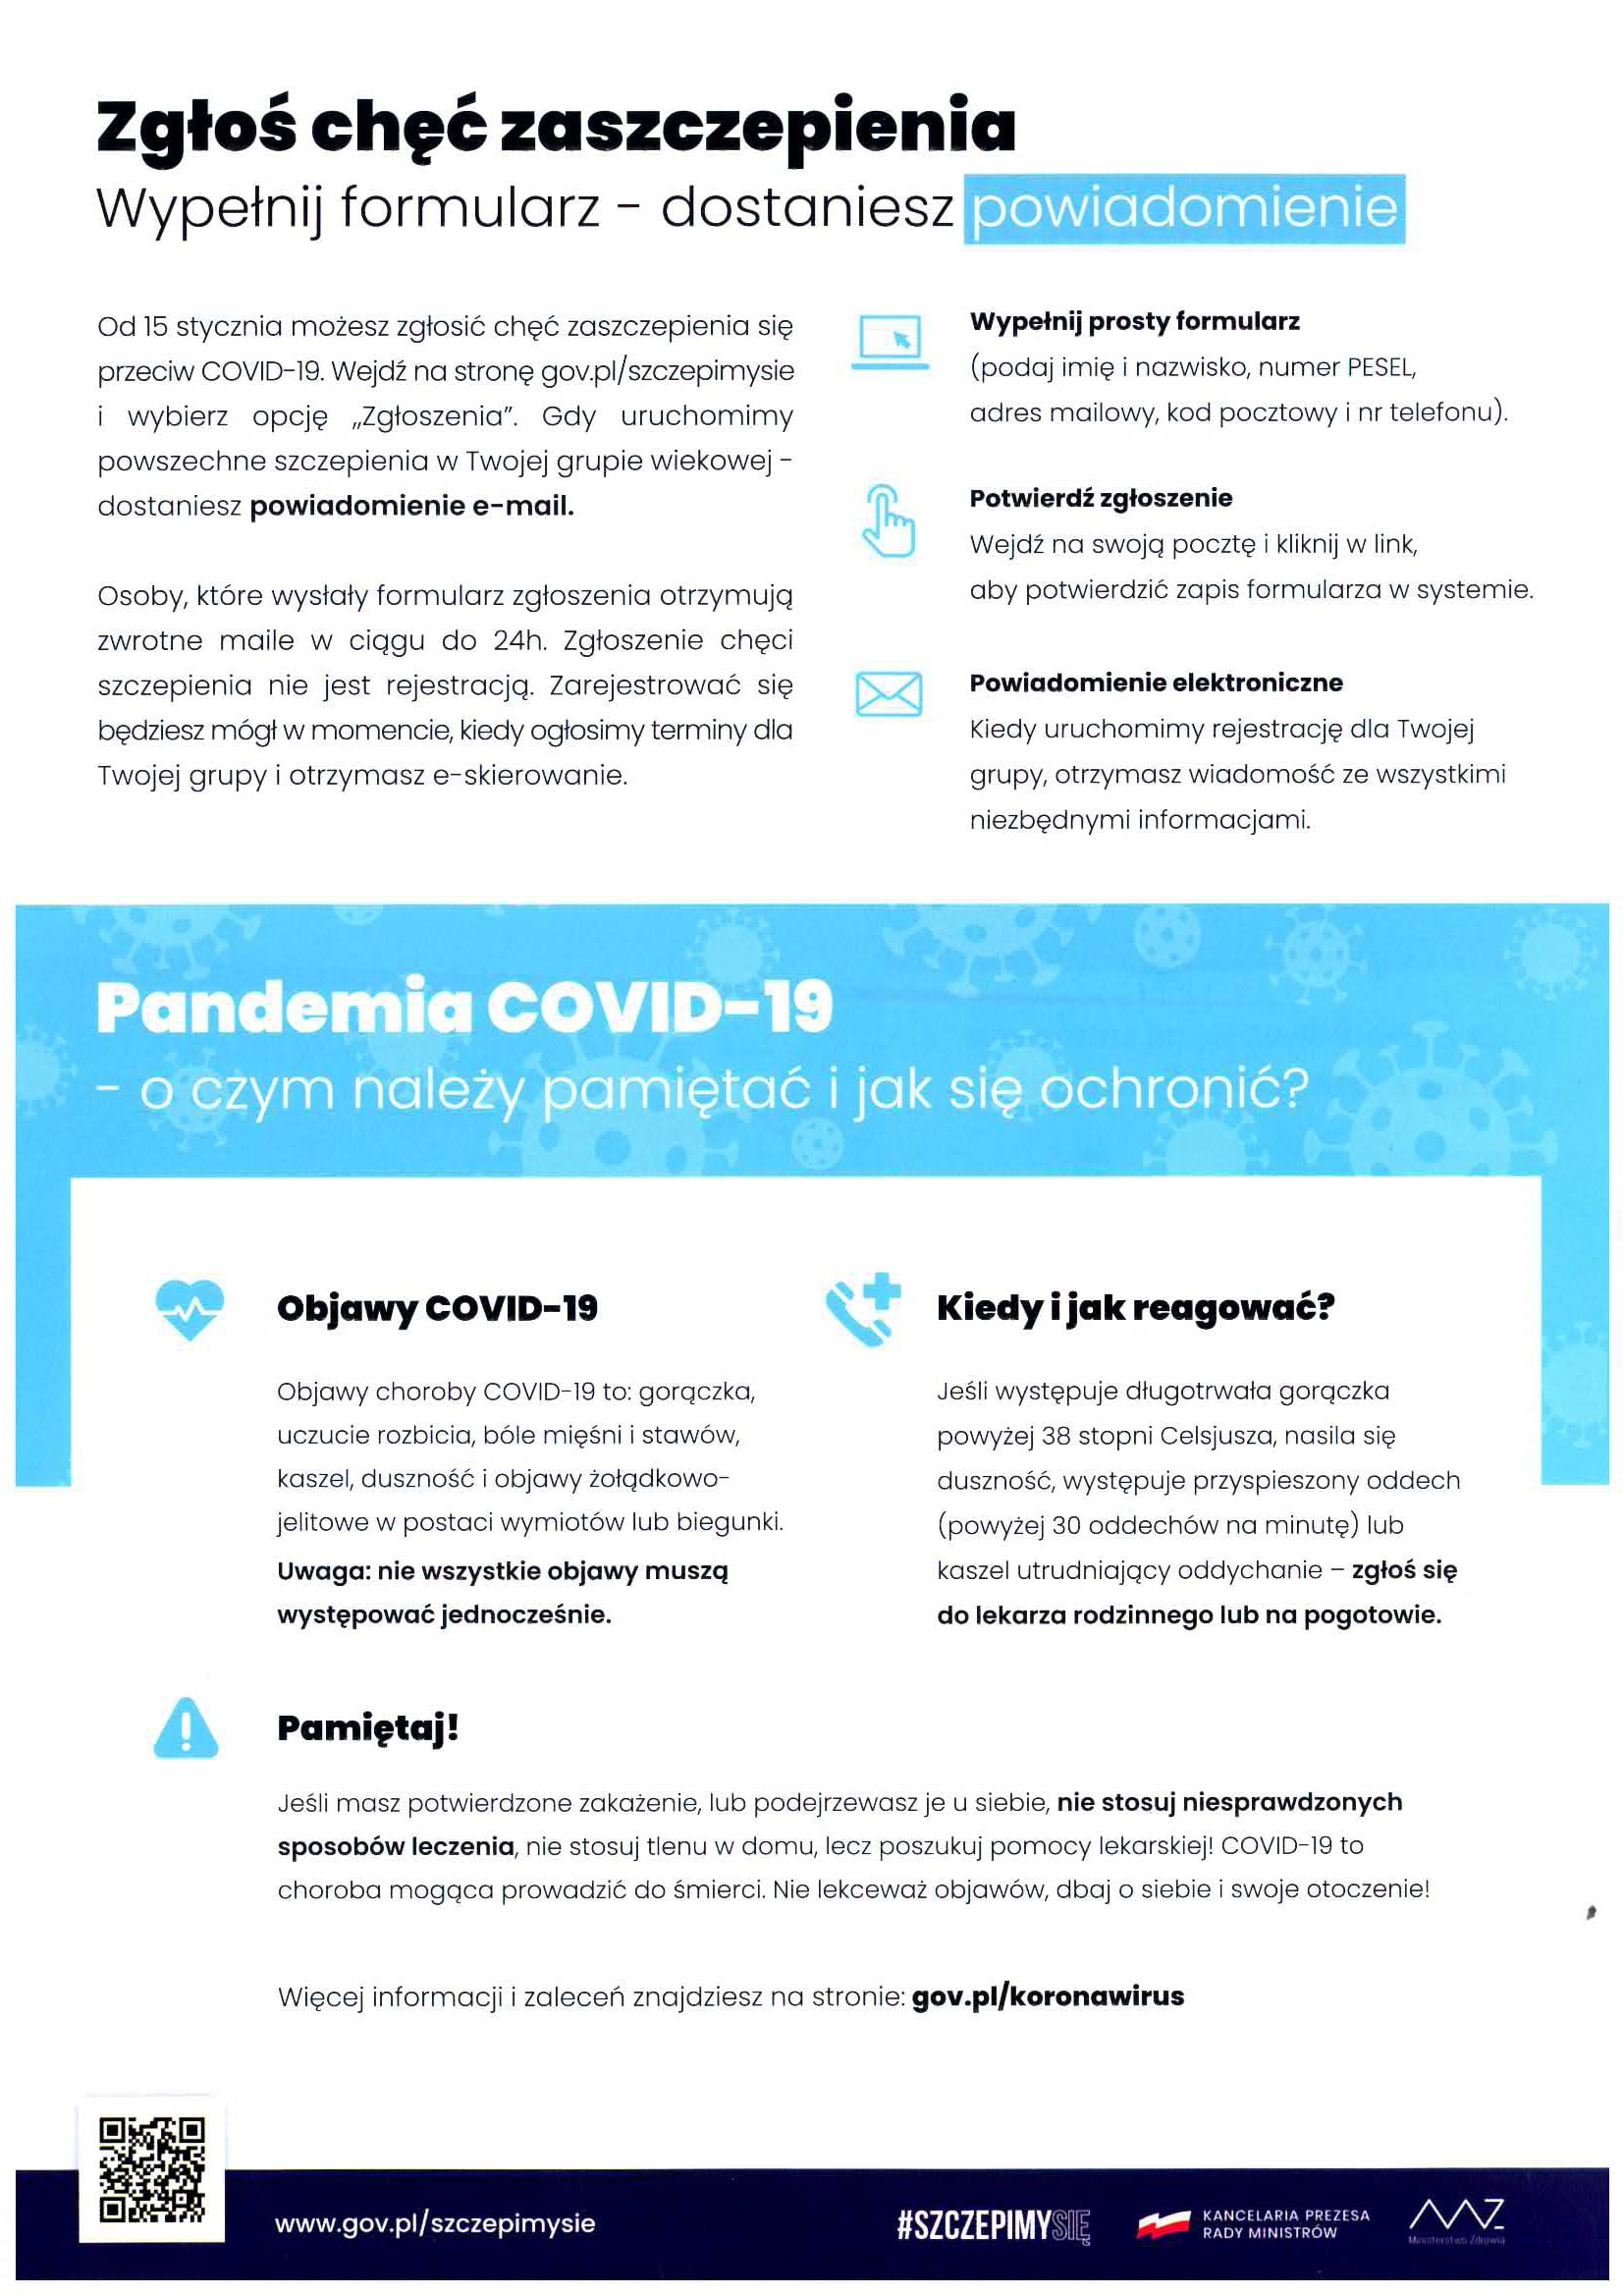 Strona 2 ulotki informacyjnej Zarejestruj się na szczepienie przeciko COVID-19